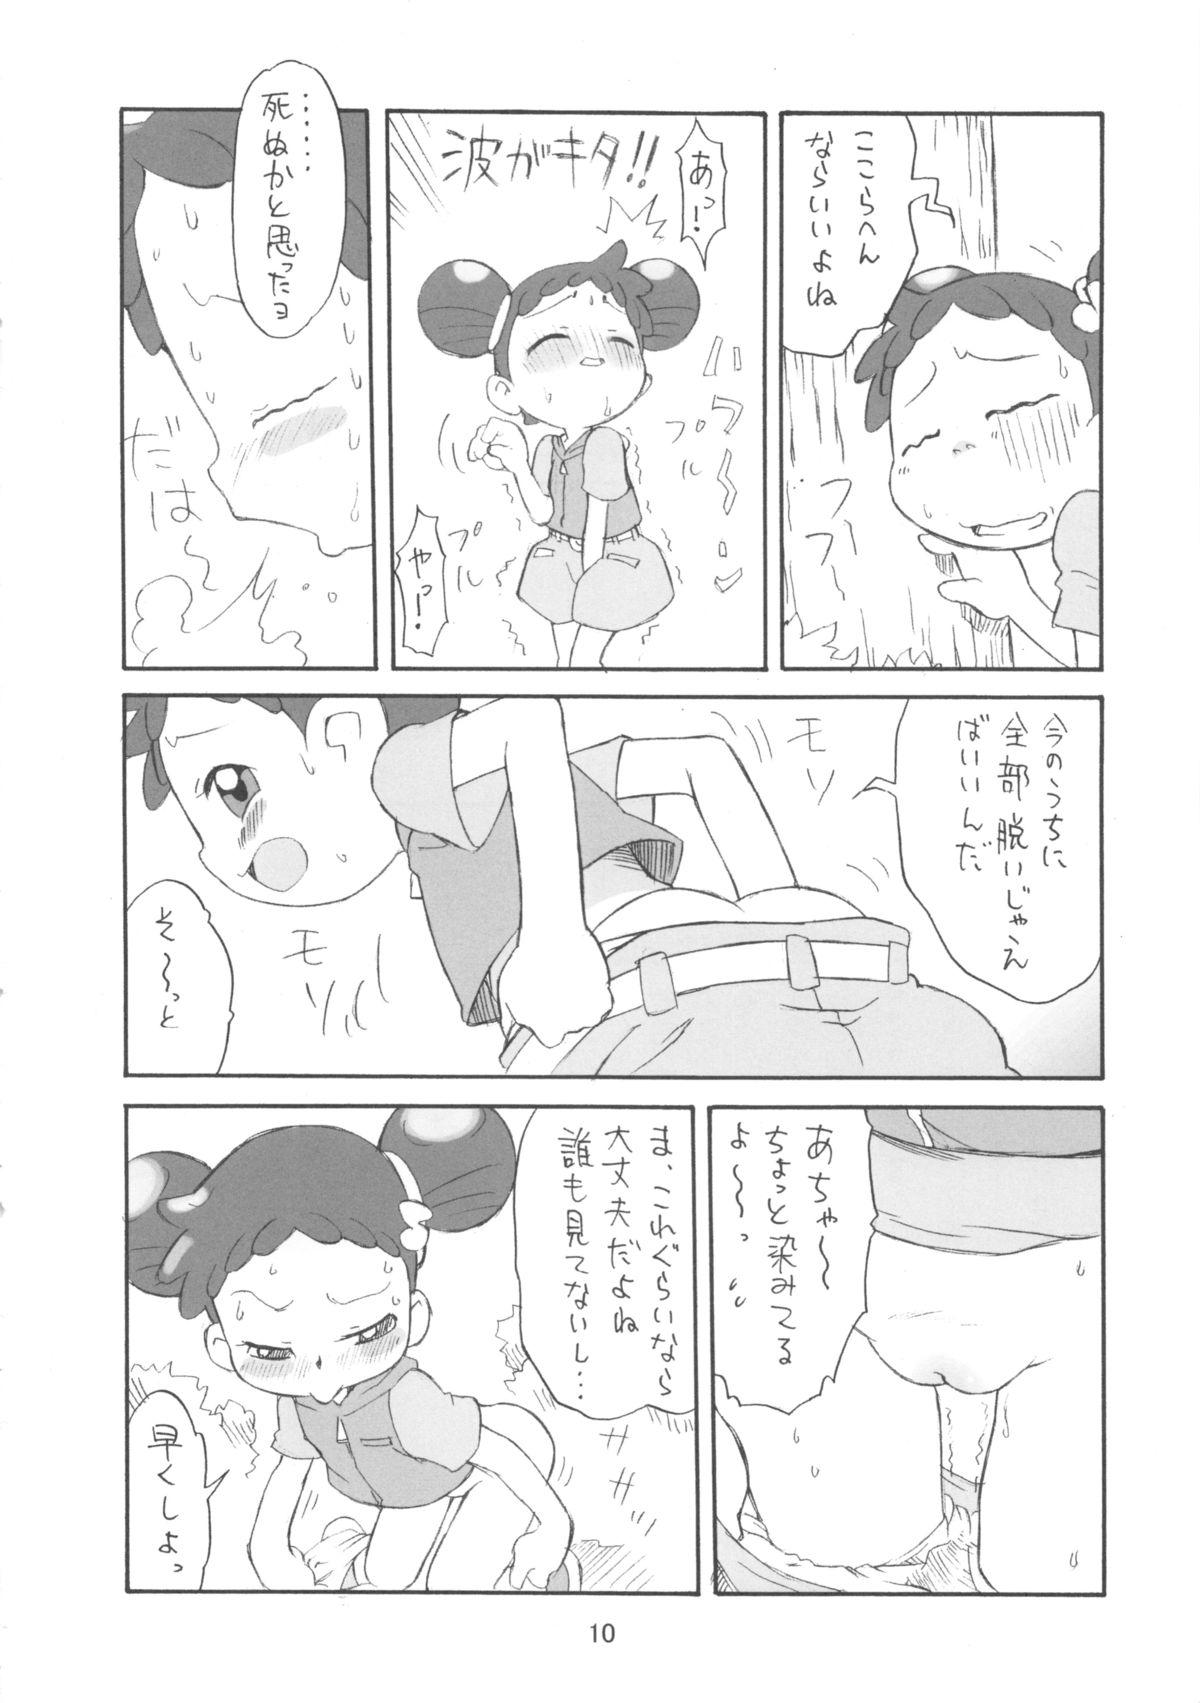 Tiny Tits Pipipupu Fukkoku Ban - Ojamajo doremi Cameltoe - Page 10